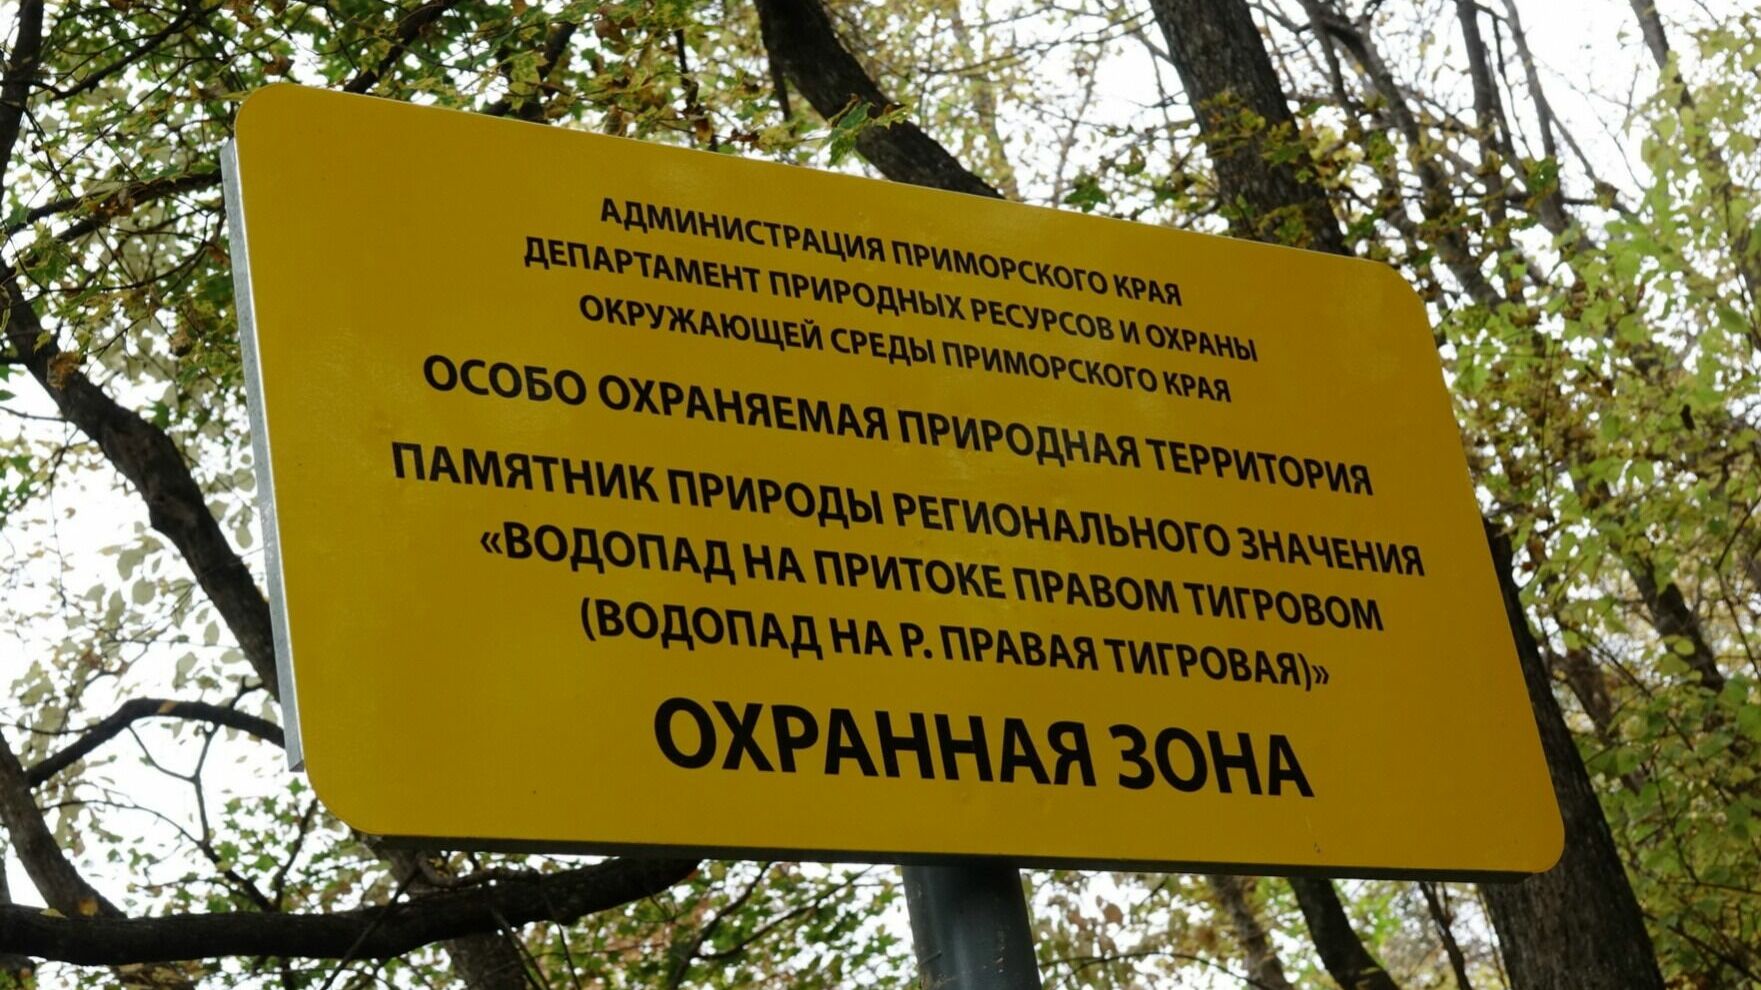 Депутаты Приморья предложат изменения к ФЗ об особо охраняемых природных территориях